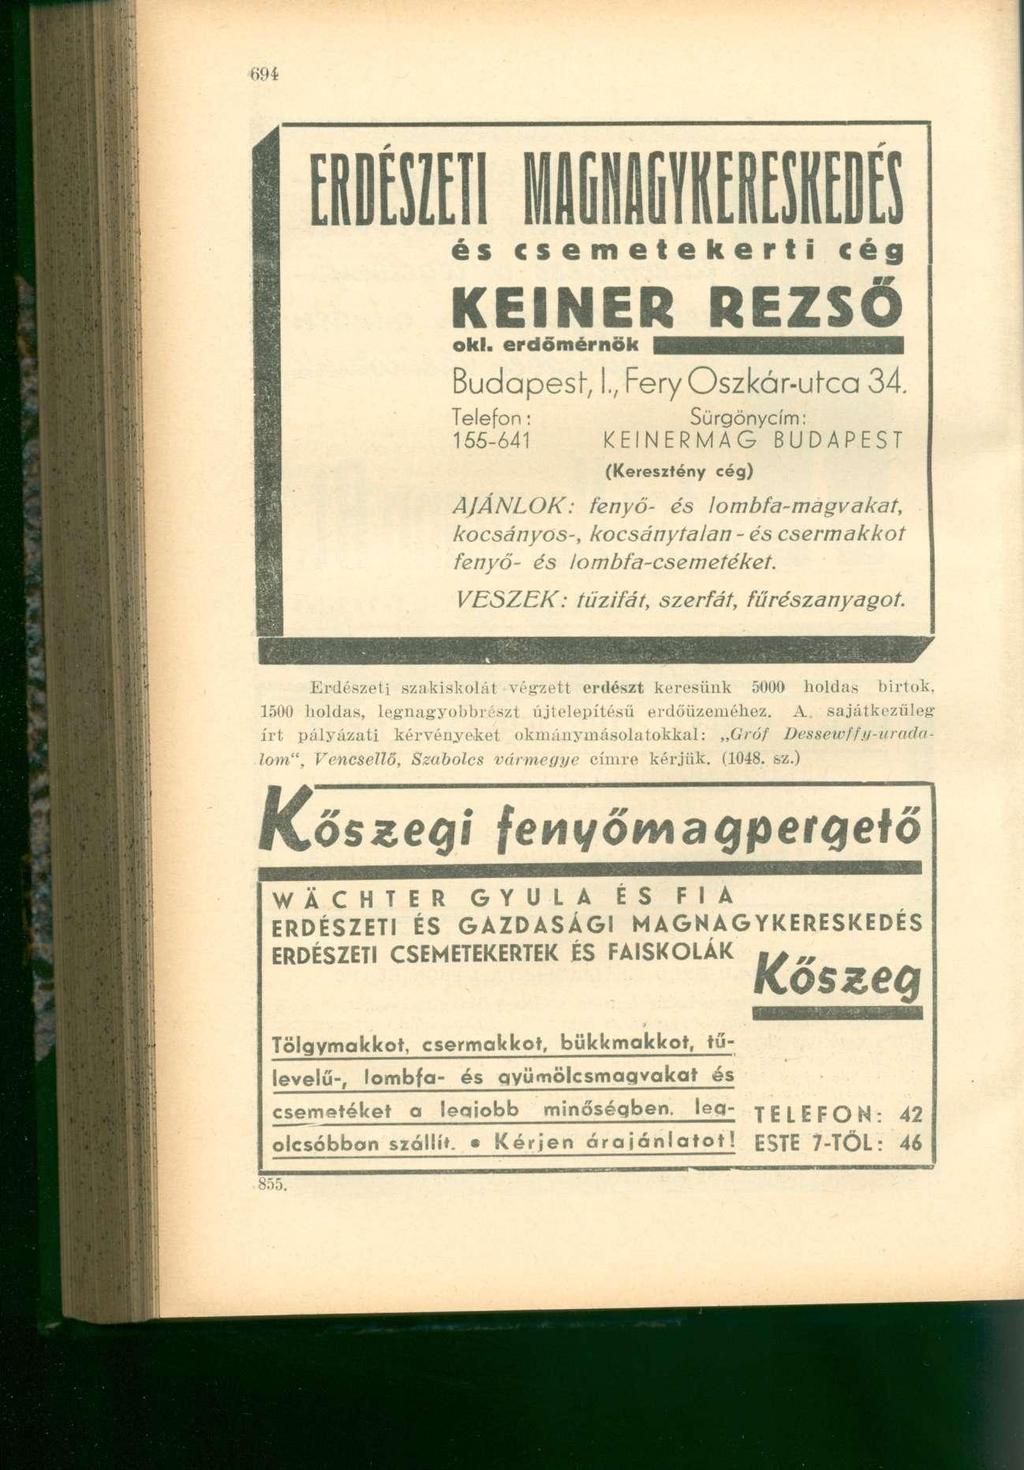 mi és csemetekerti cég KEINER REZS Ő oki. erdőmérnö k i ^ r a a M B Budapest -, I., Fery Oszkár-ul"ca 34.